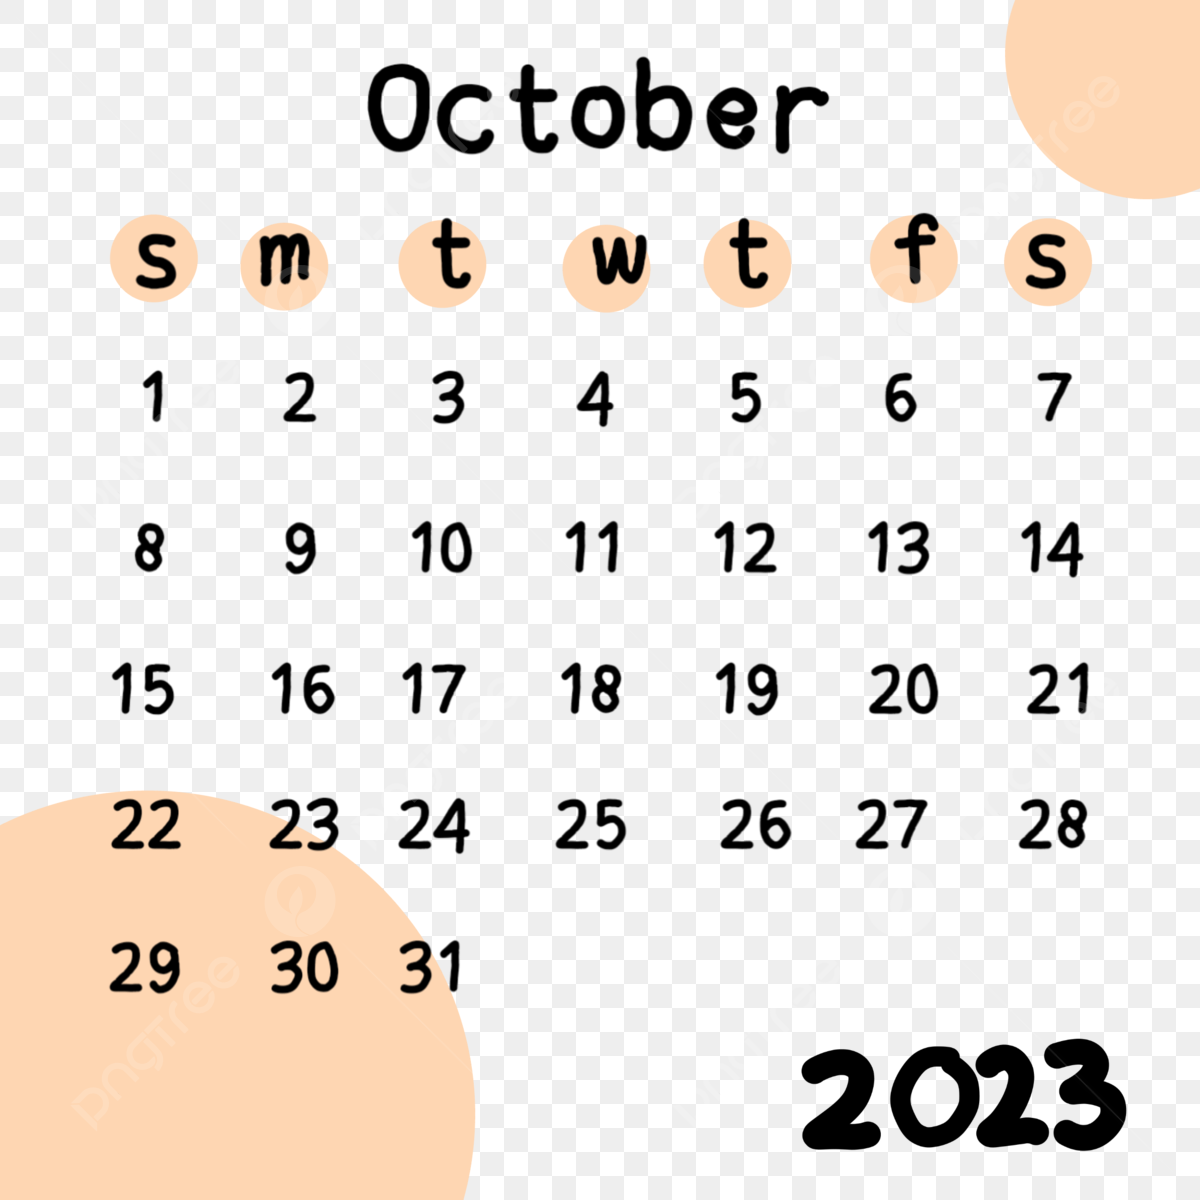 October calendar png transparent calendar october with pastel color background calendar october png image for free download